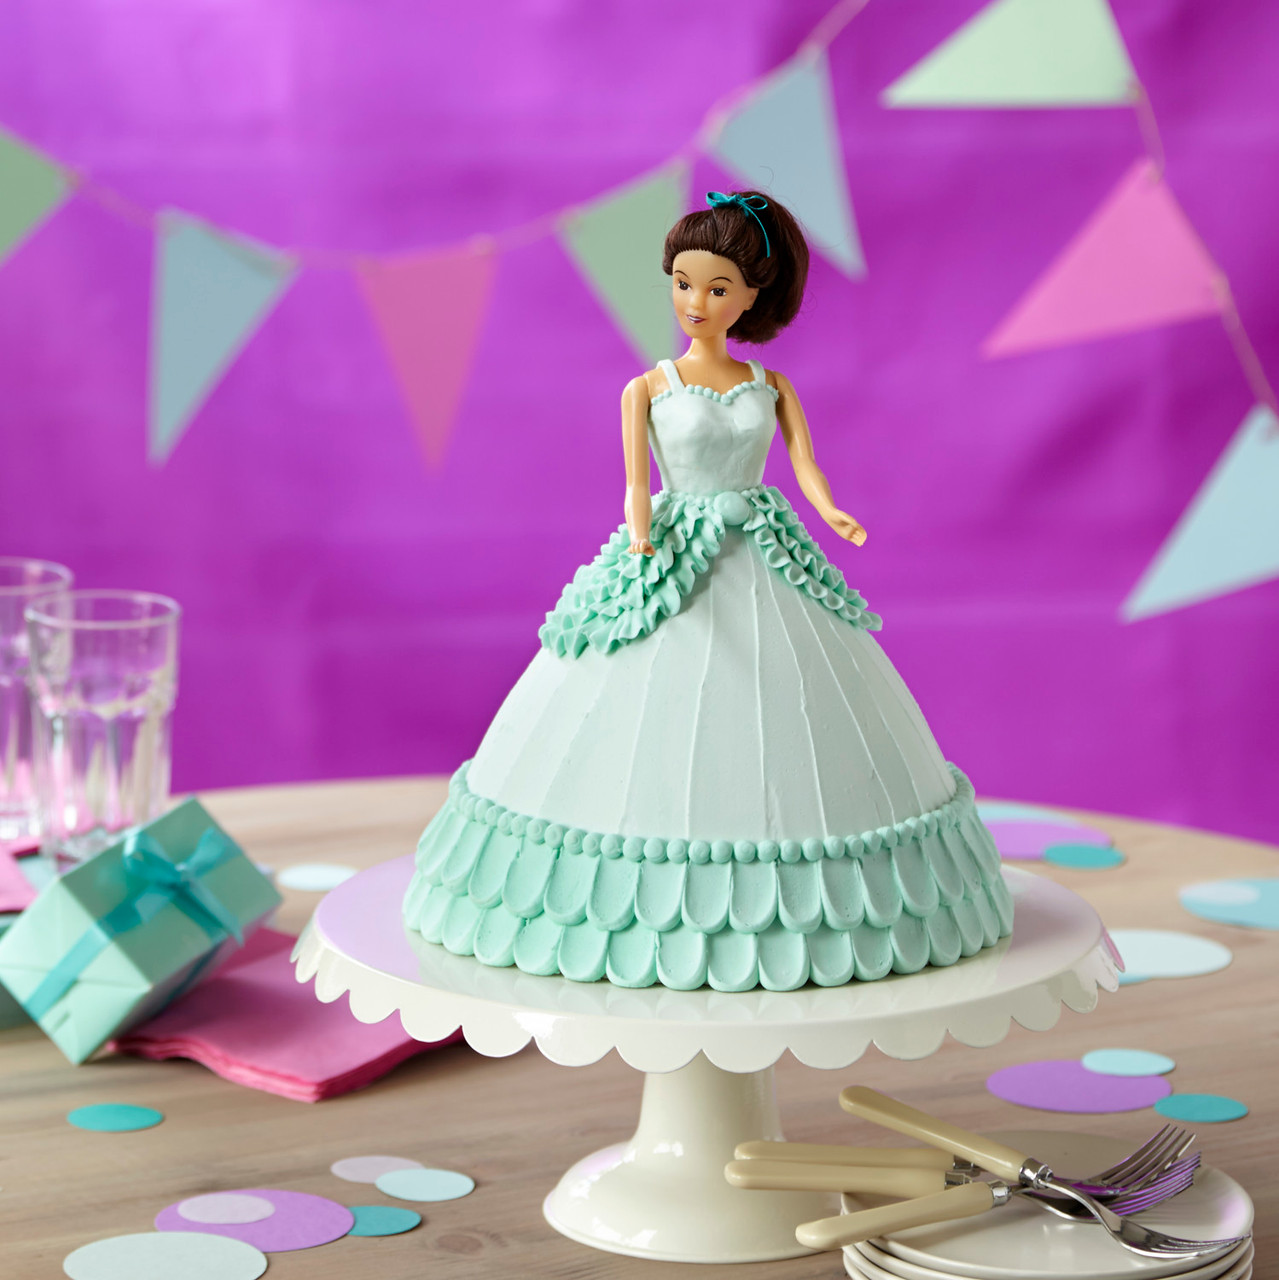 Barbie Doll Cake - Decorated Cake by Yap Ko Shin - CakesDecor